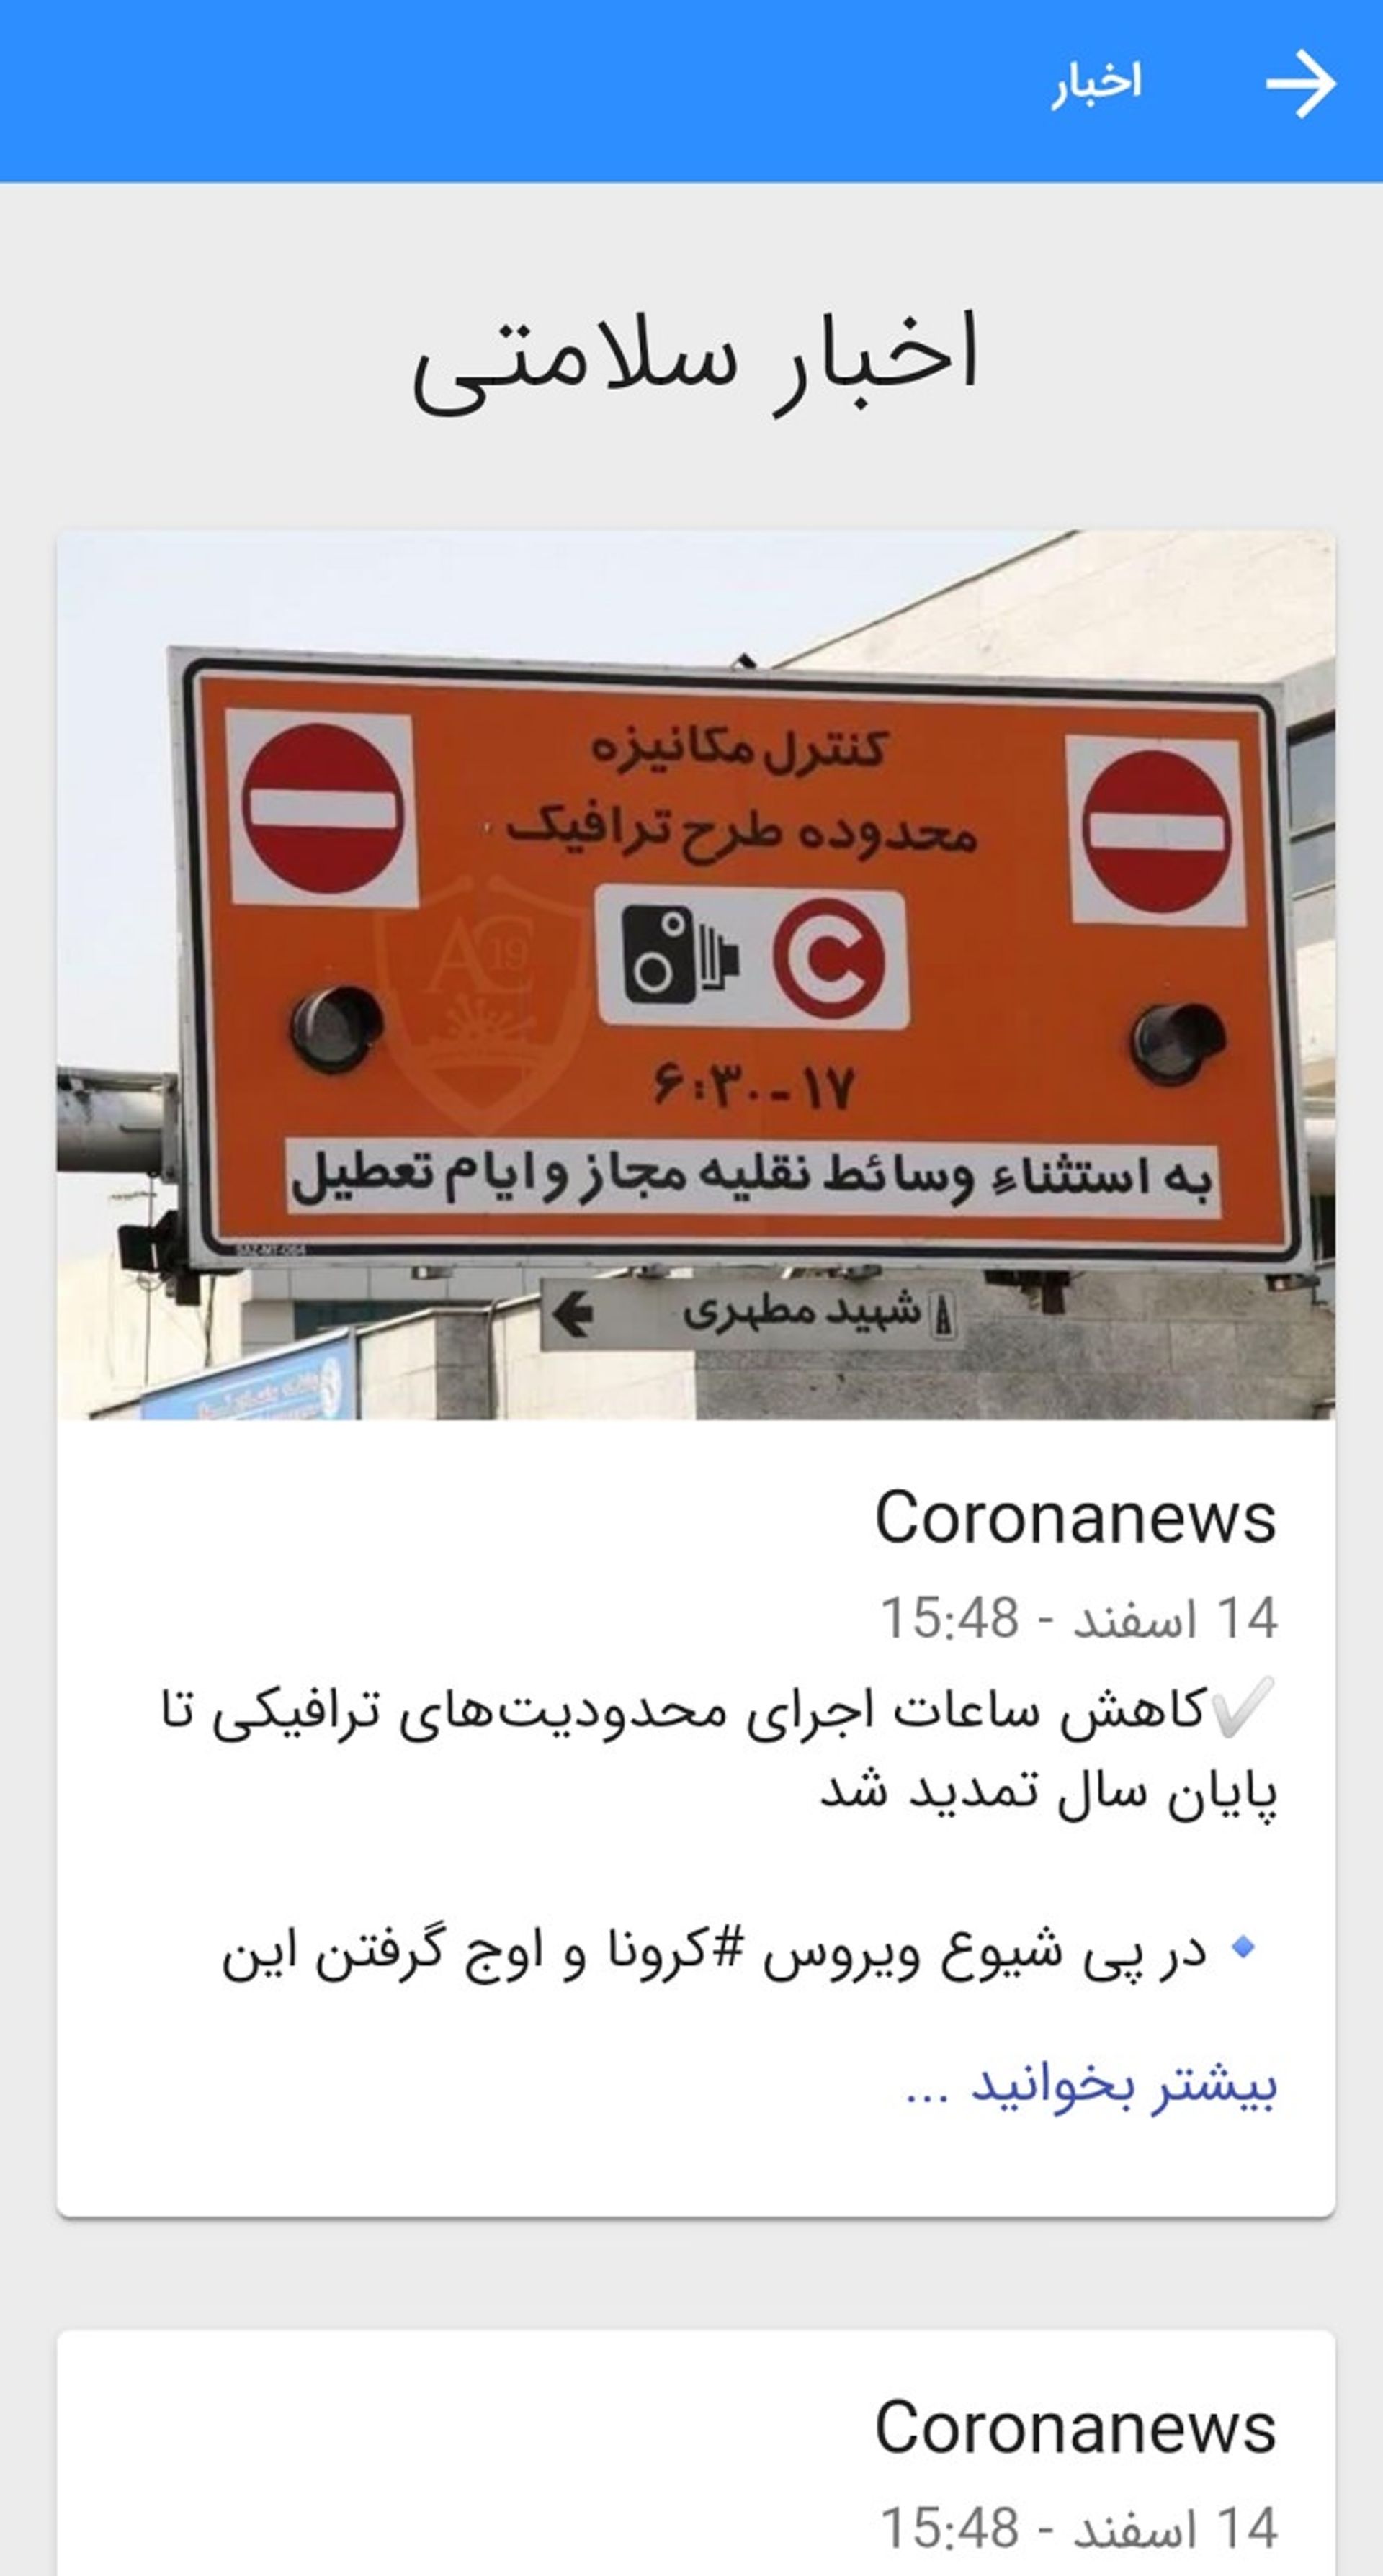 مرجع متخصصين ايران اخبار تخصصي اپ: سامانه مقابله با كرونا